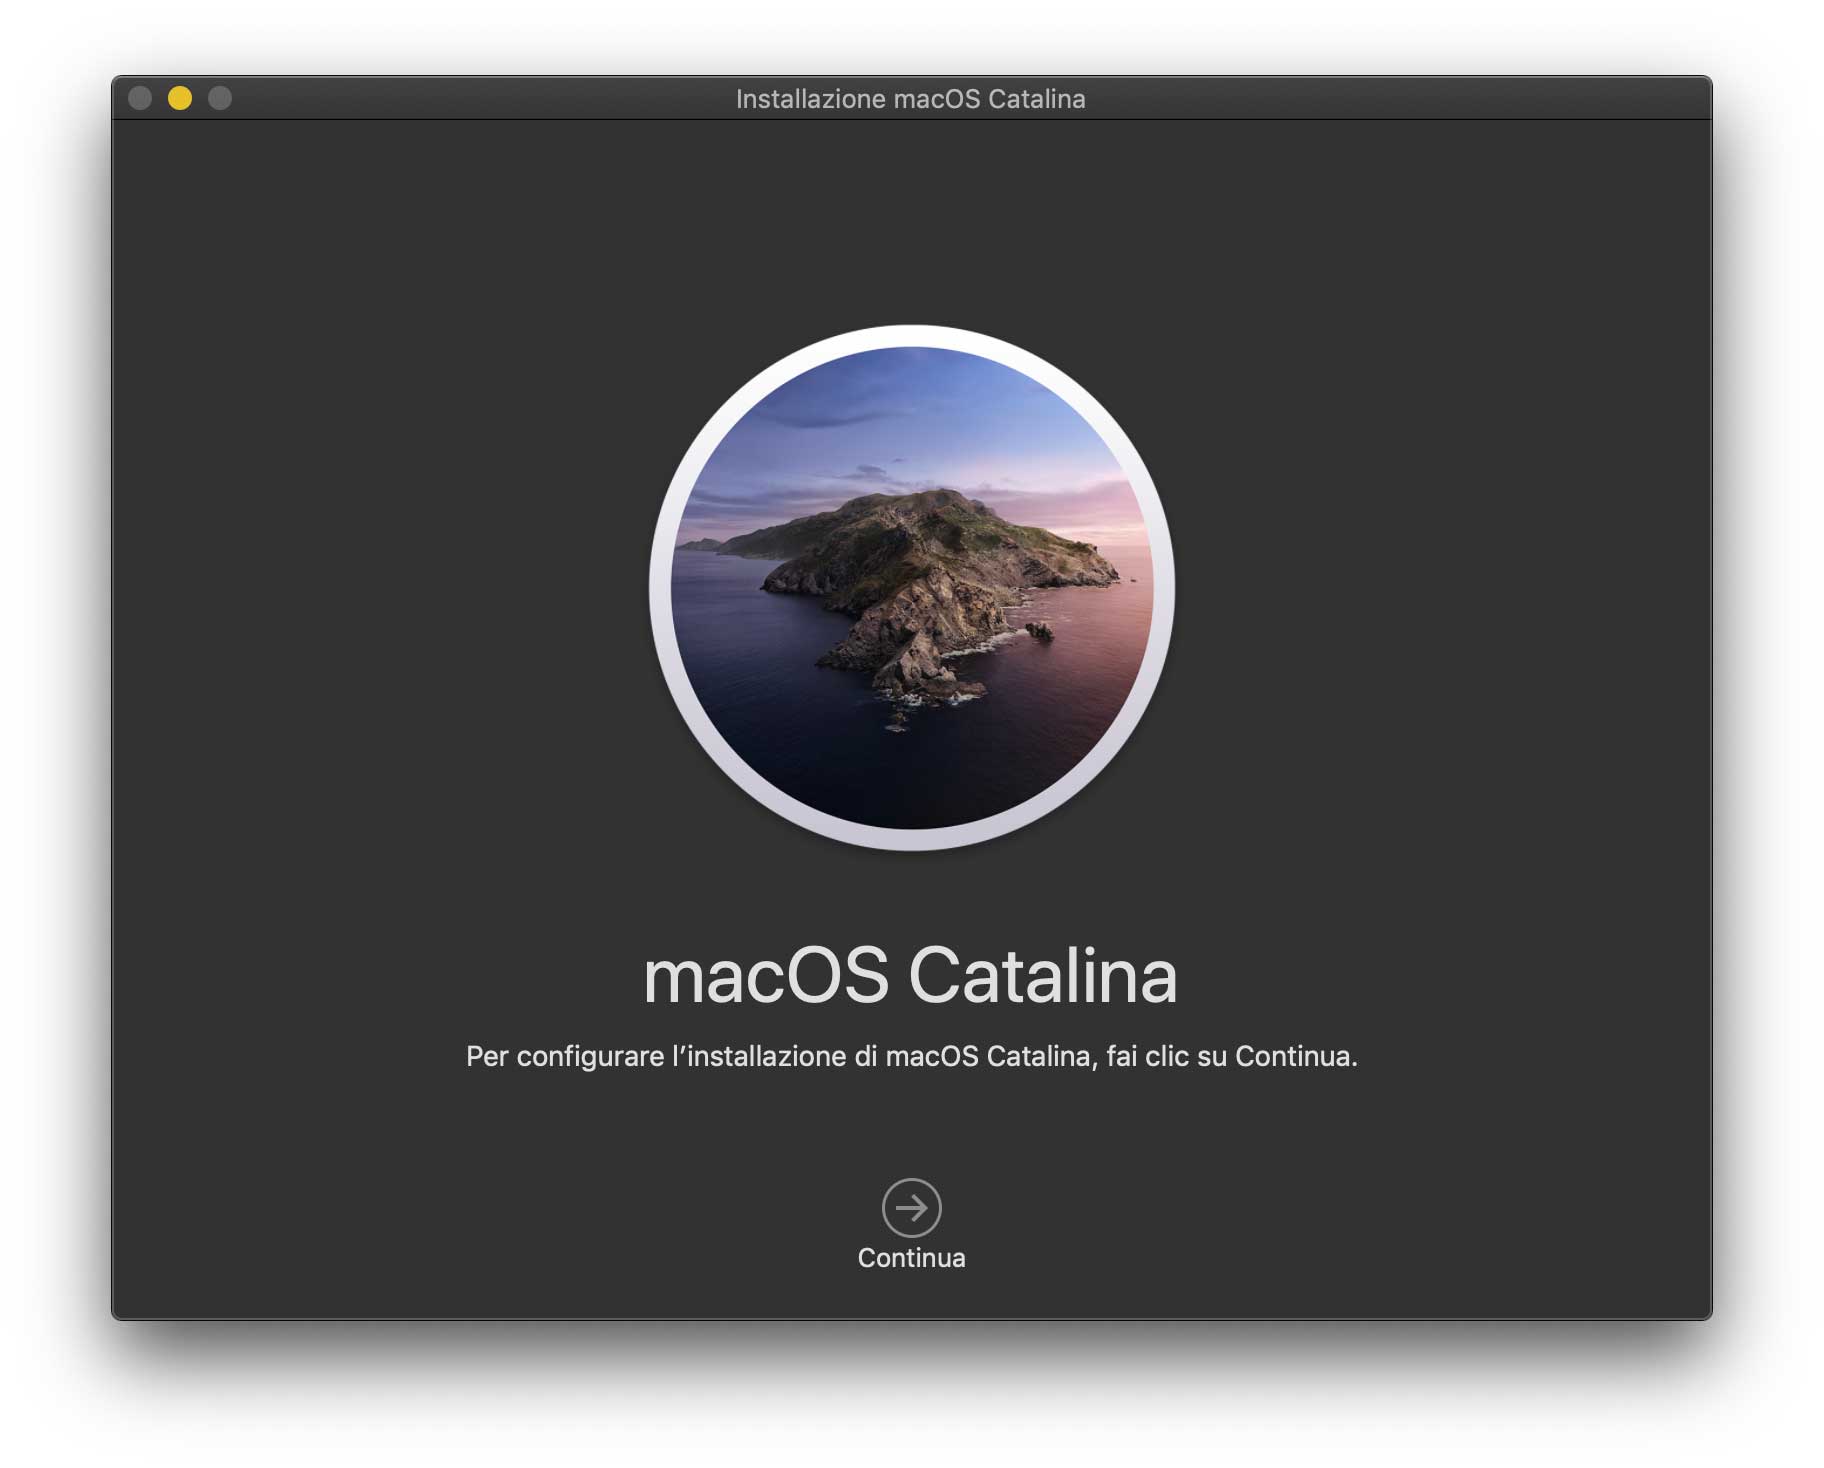 Disponibile macOS 10.15 Catalina, tutte le novità e come installarlo